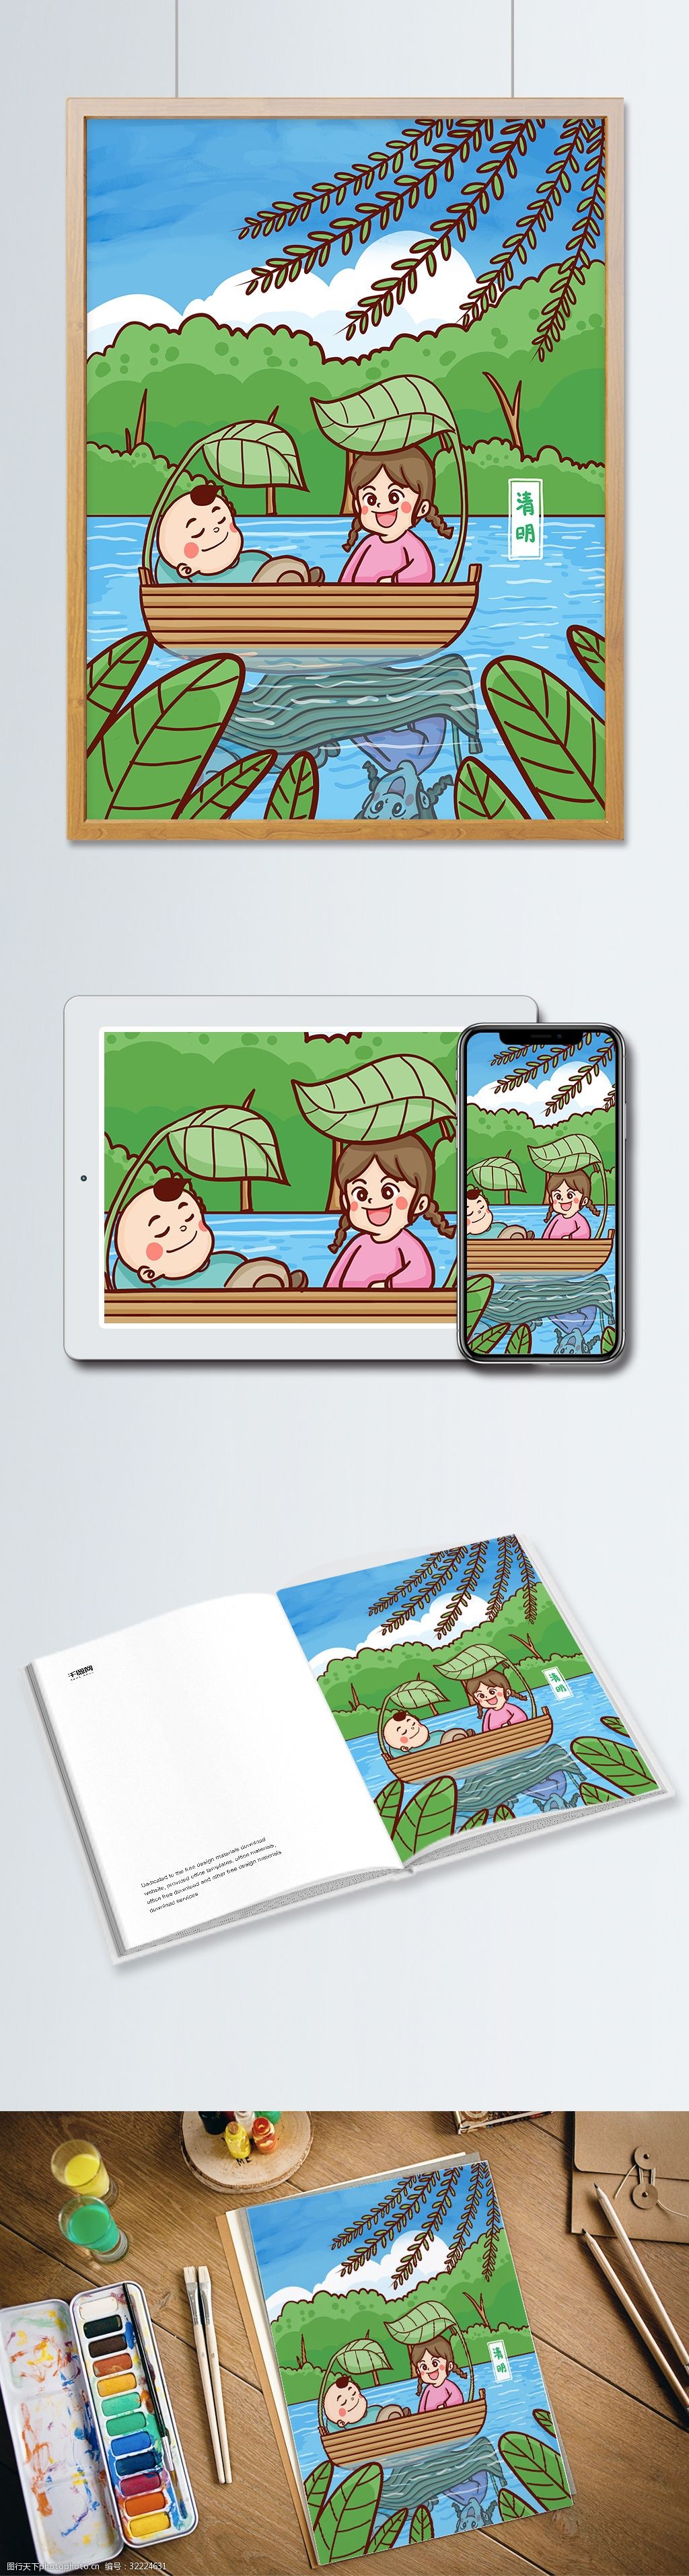 清明节两孩子在湖面上划船踏青手绘原创插画